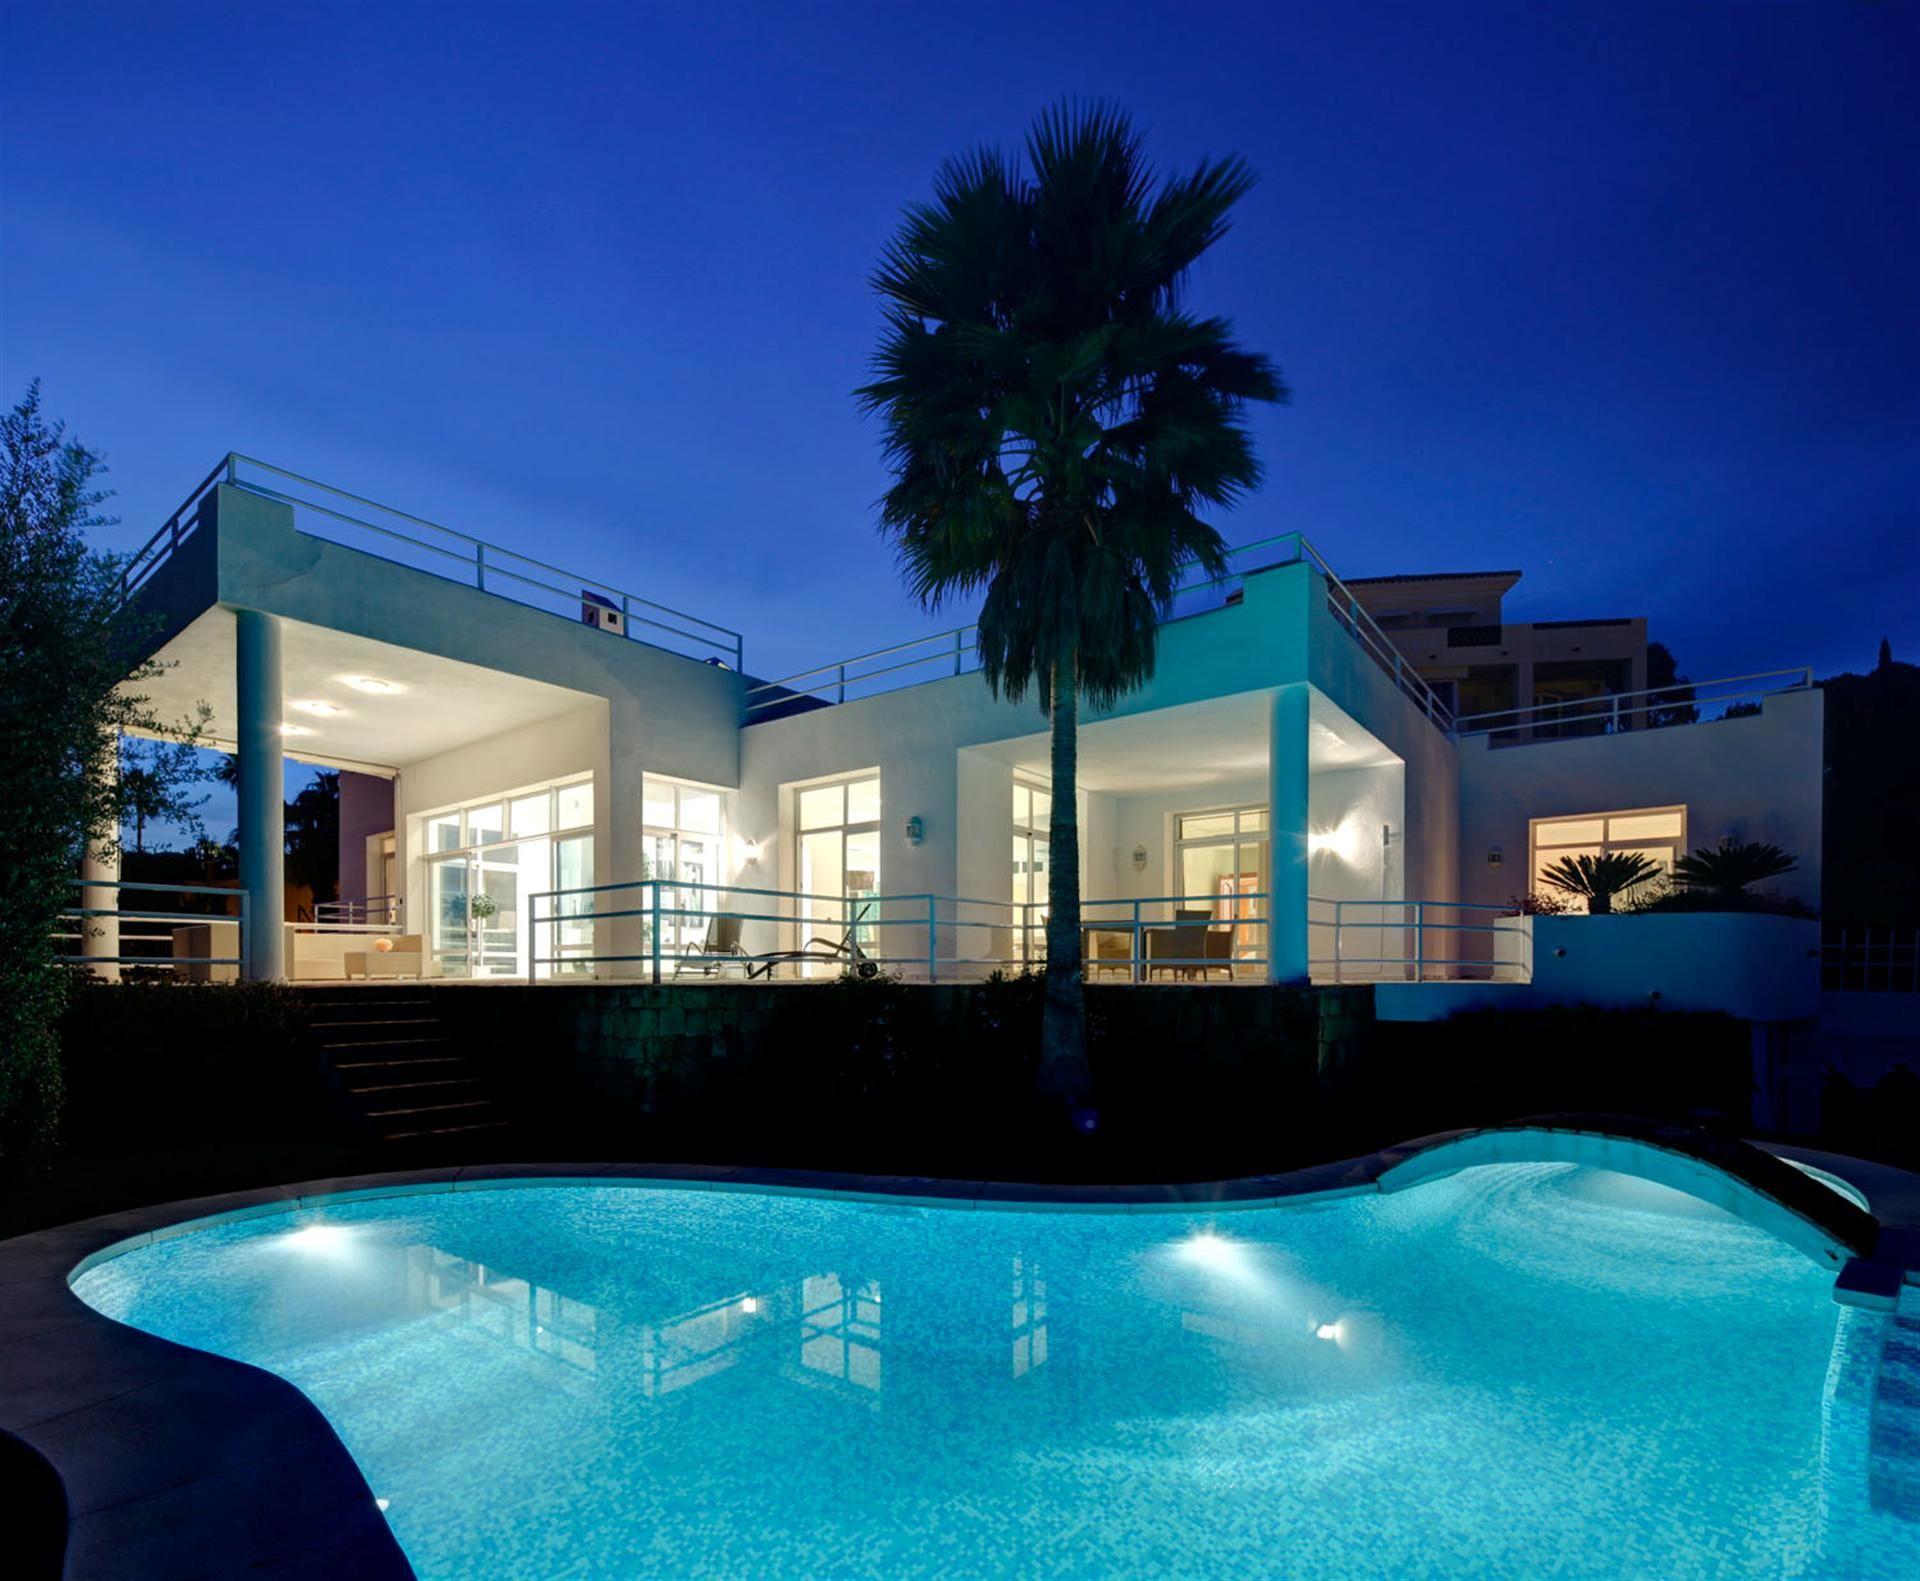 5 bedroom house / villa for sale in Benahavis, Costa del Sol